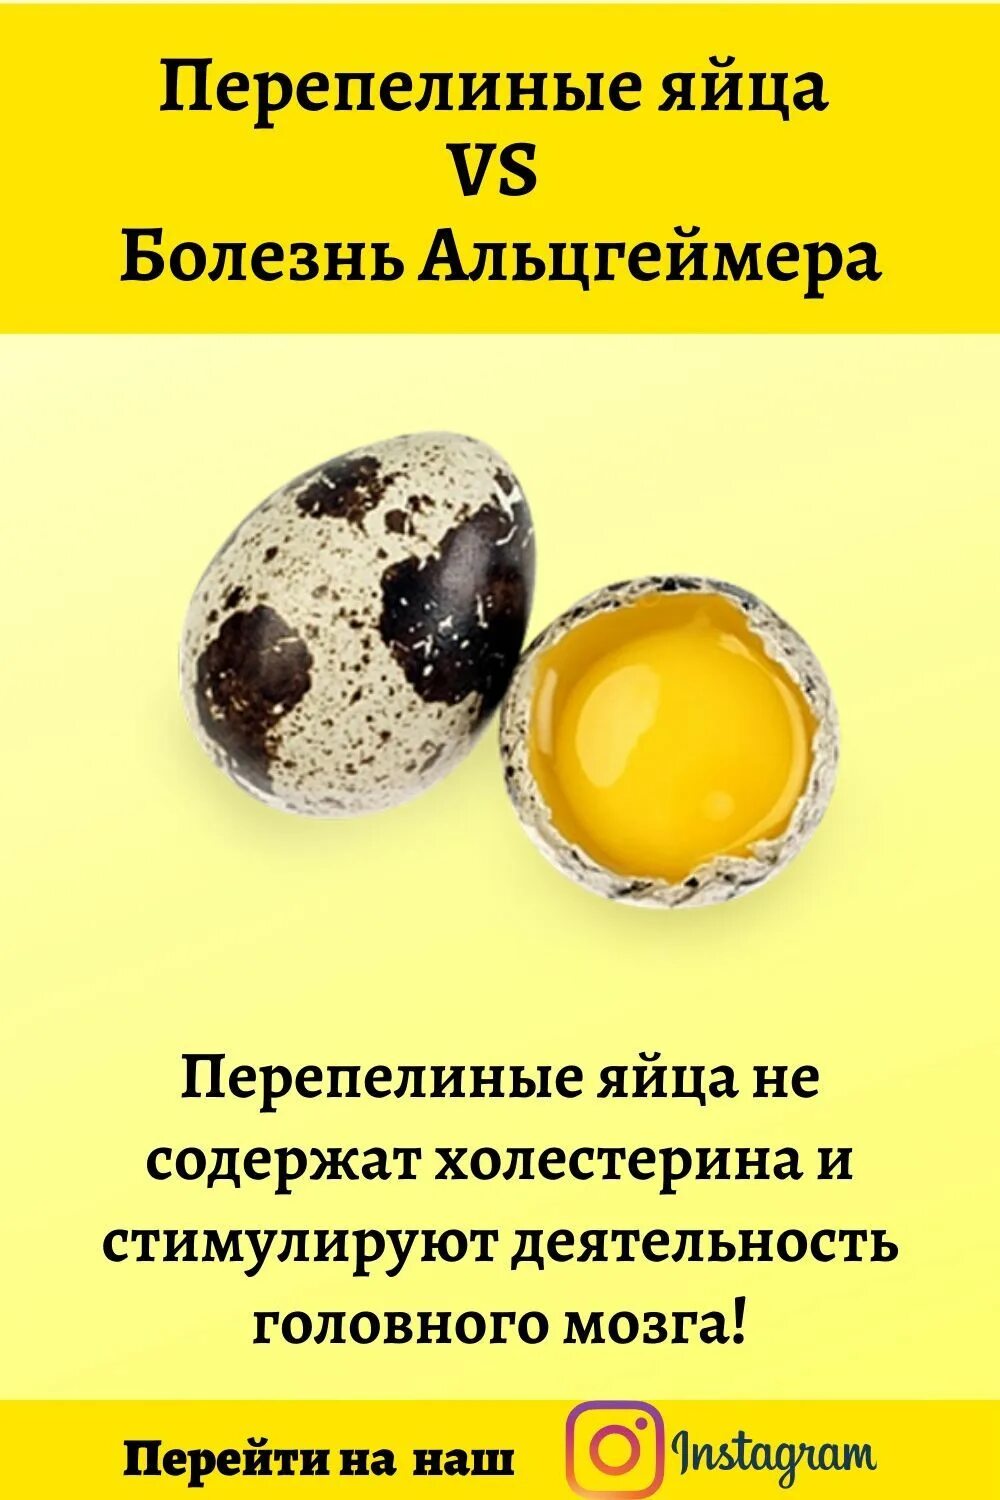 Сколько перепелиных яиц в день можно ребенку. Яйцо перепелиное. Холестерин в перепелиных яйцах. Размер перепелиного яйца. Витамины в перепелиных яйцах.